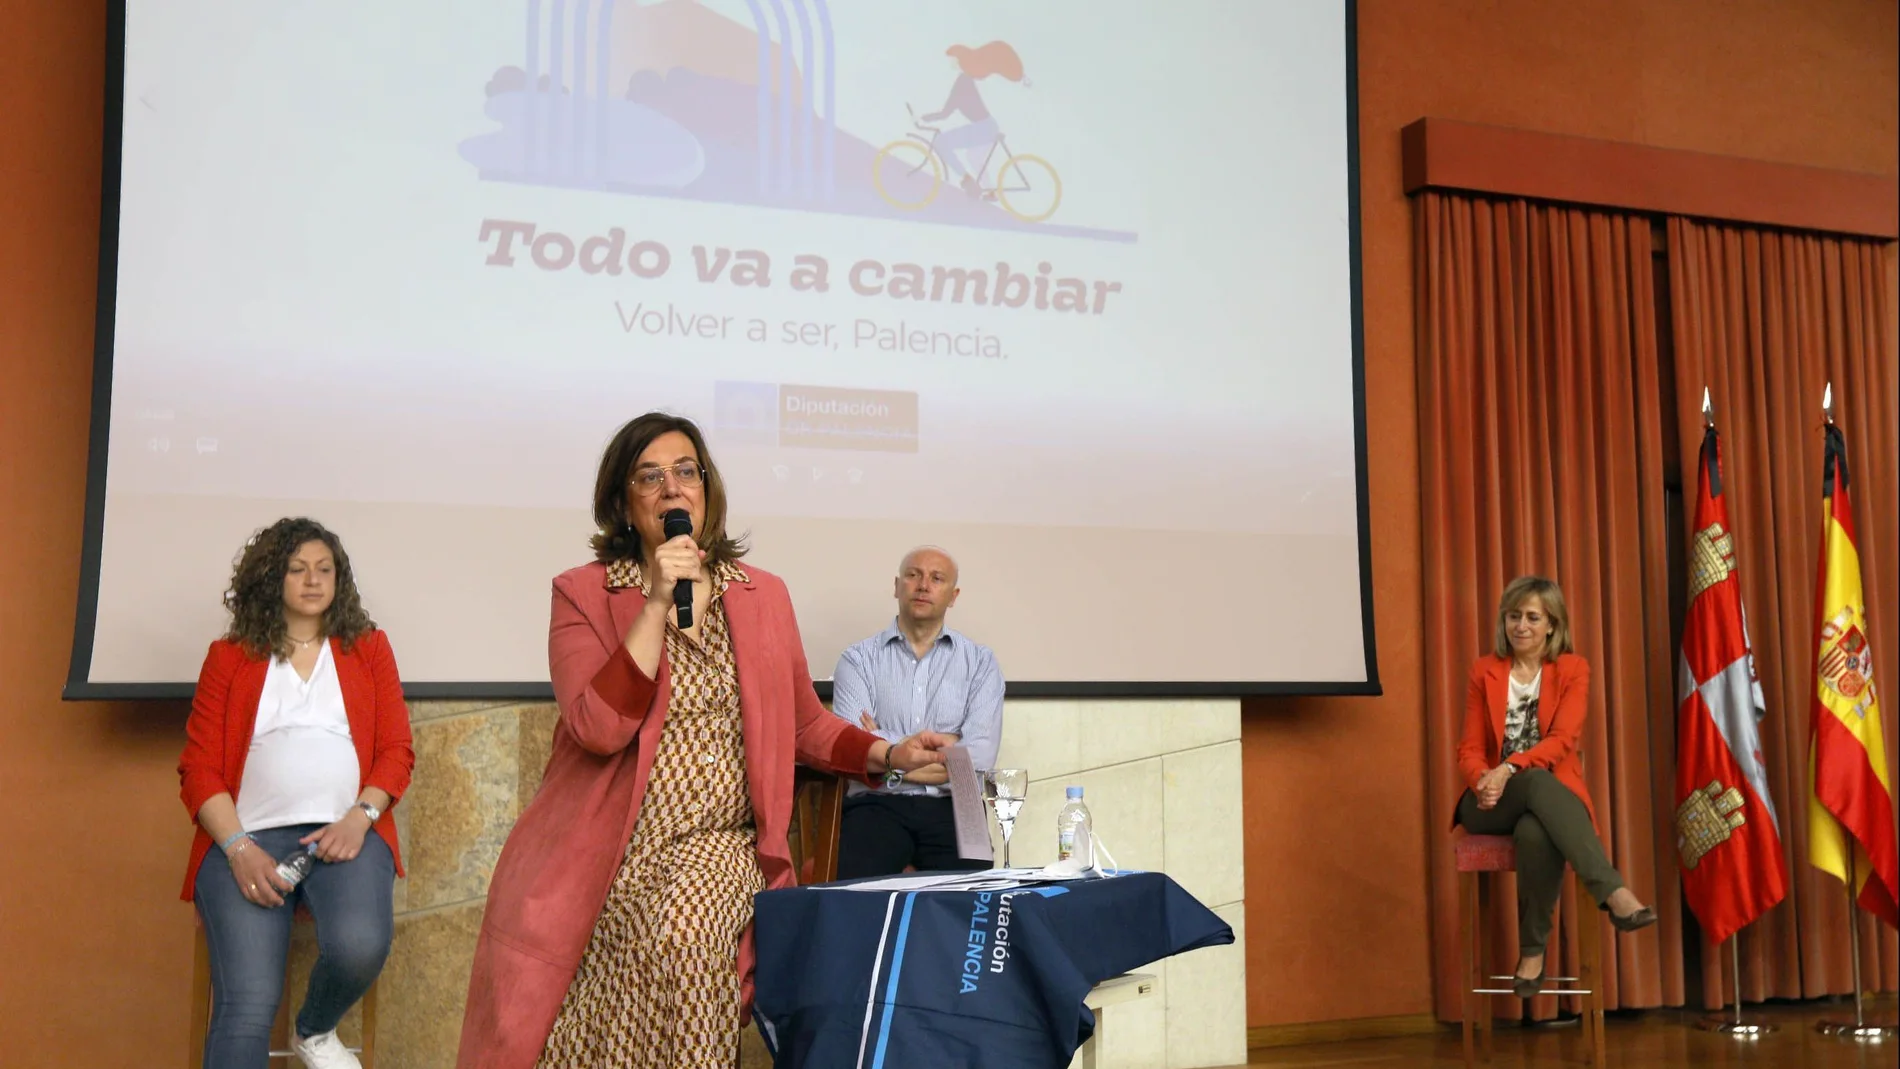 La presidenta de la Diputación, Ángeles Armisén, presenta la campaña "Todo va a cambiar. Volver a ser, Palencia"